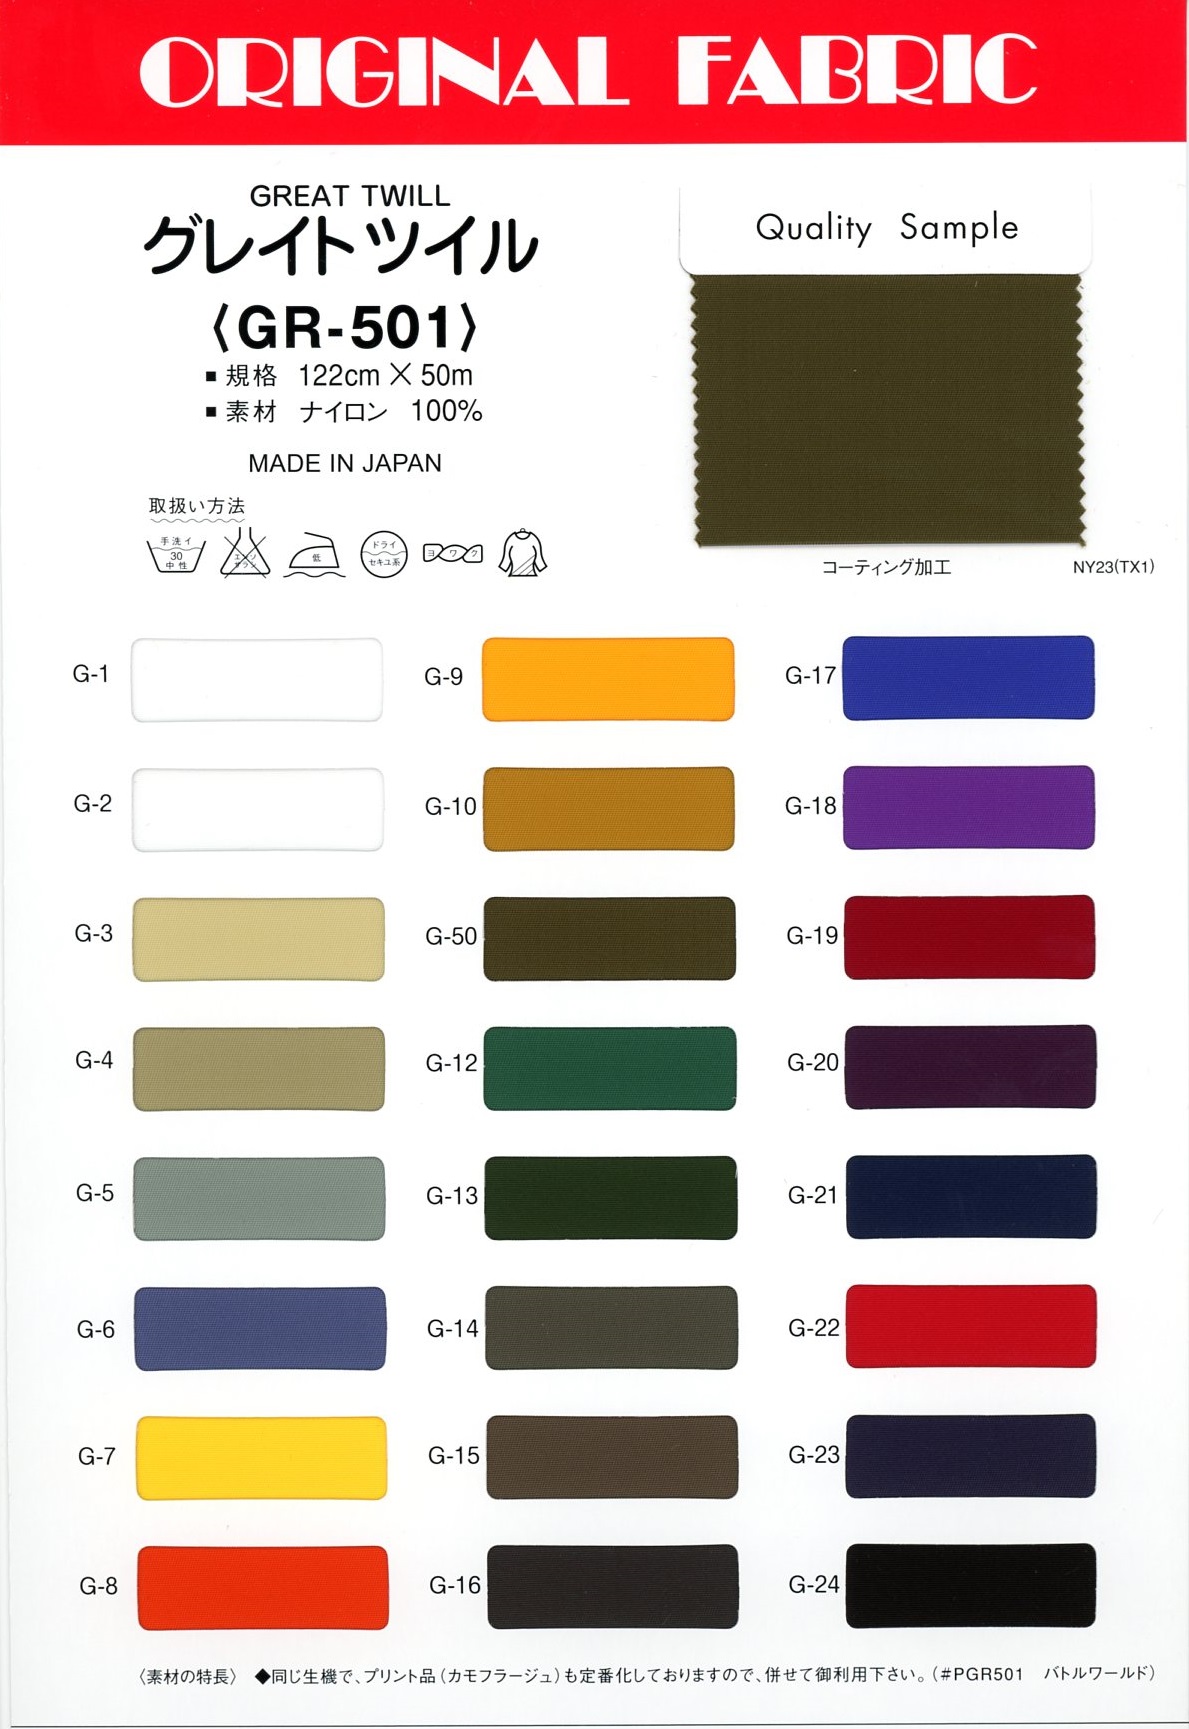 GR501 Great Twill[Textile / Fabric] Masuda